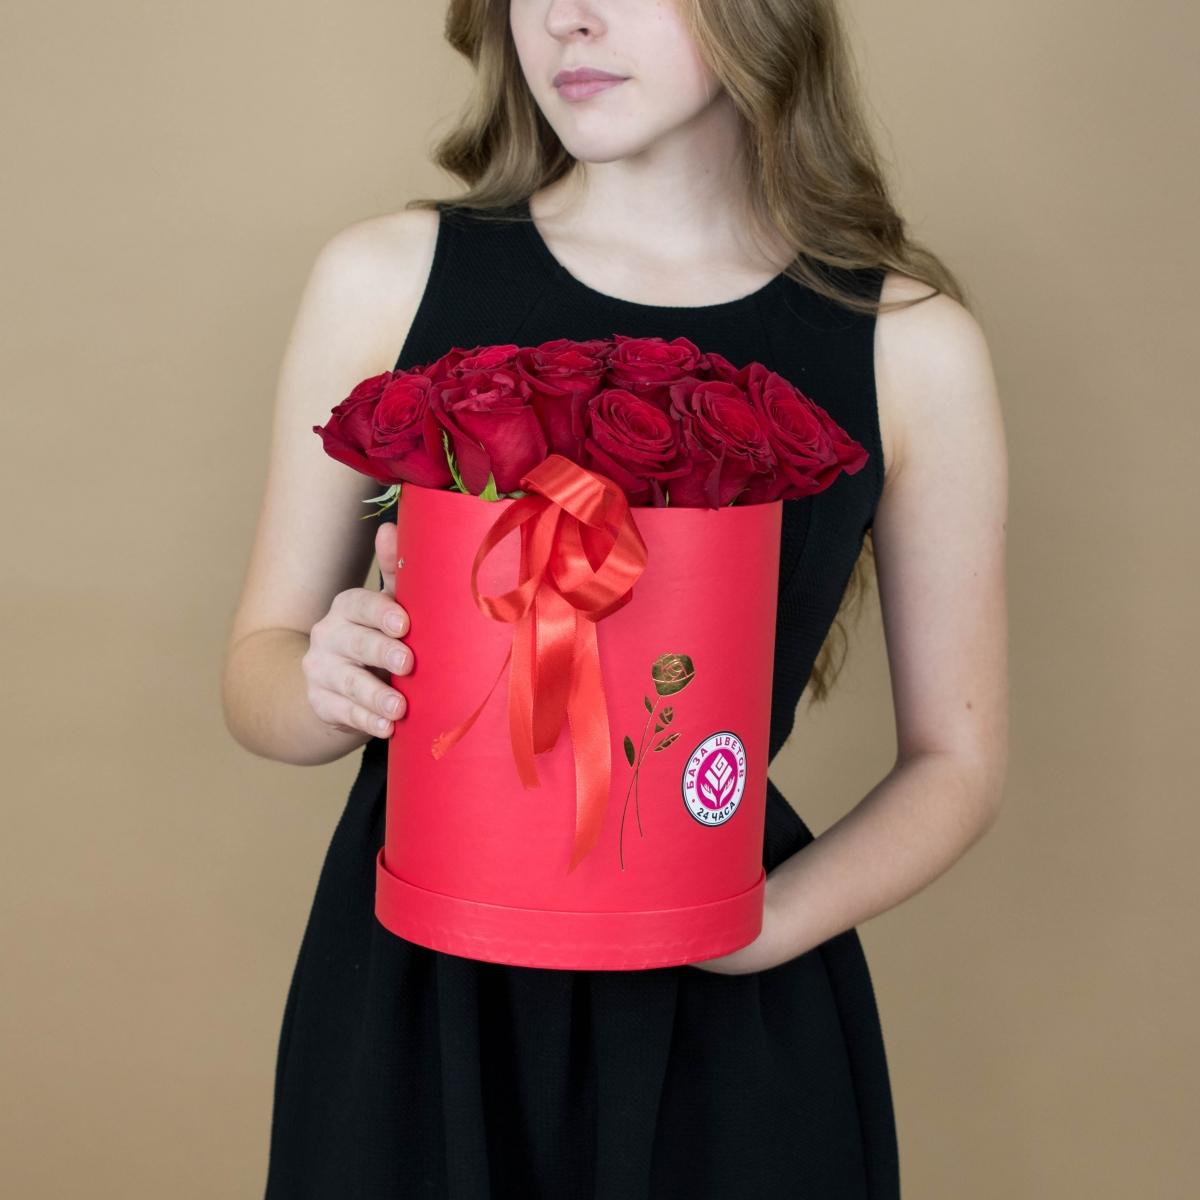 Розы красные в шляпной коробке Артикул   2171